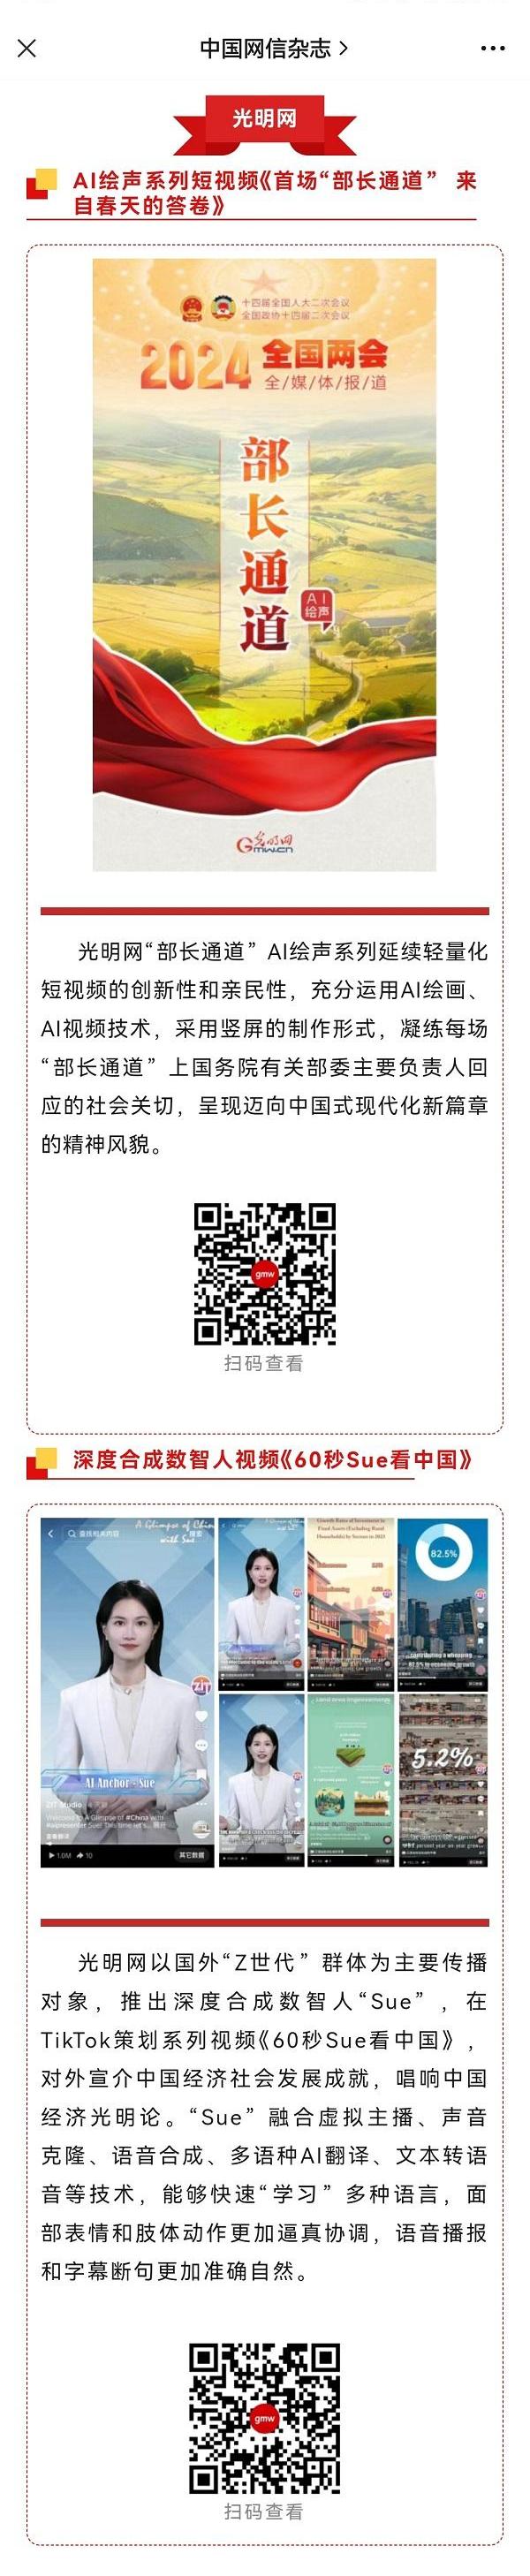 《中国网信》杂志公众号刊文介绍光明网两会创意融媒体作品